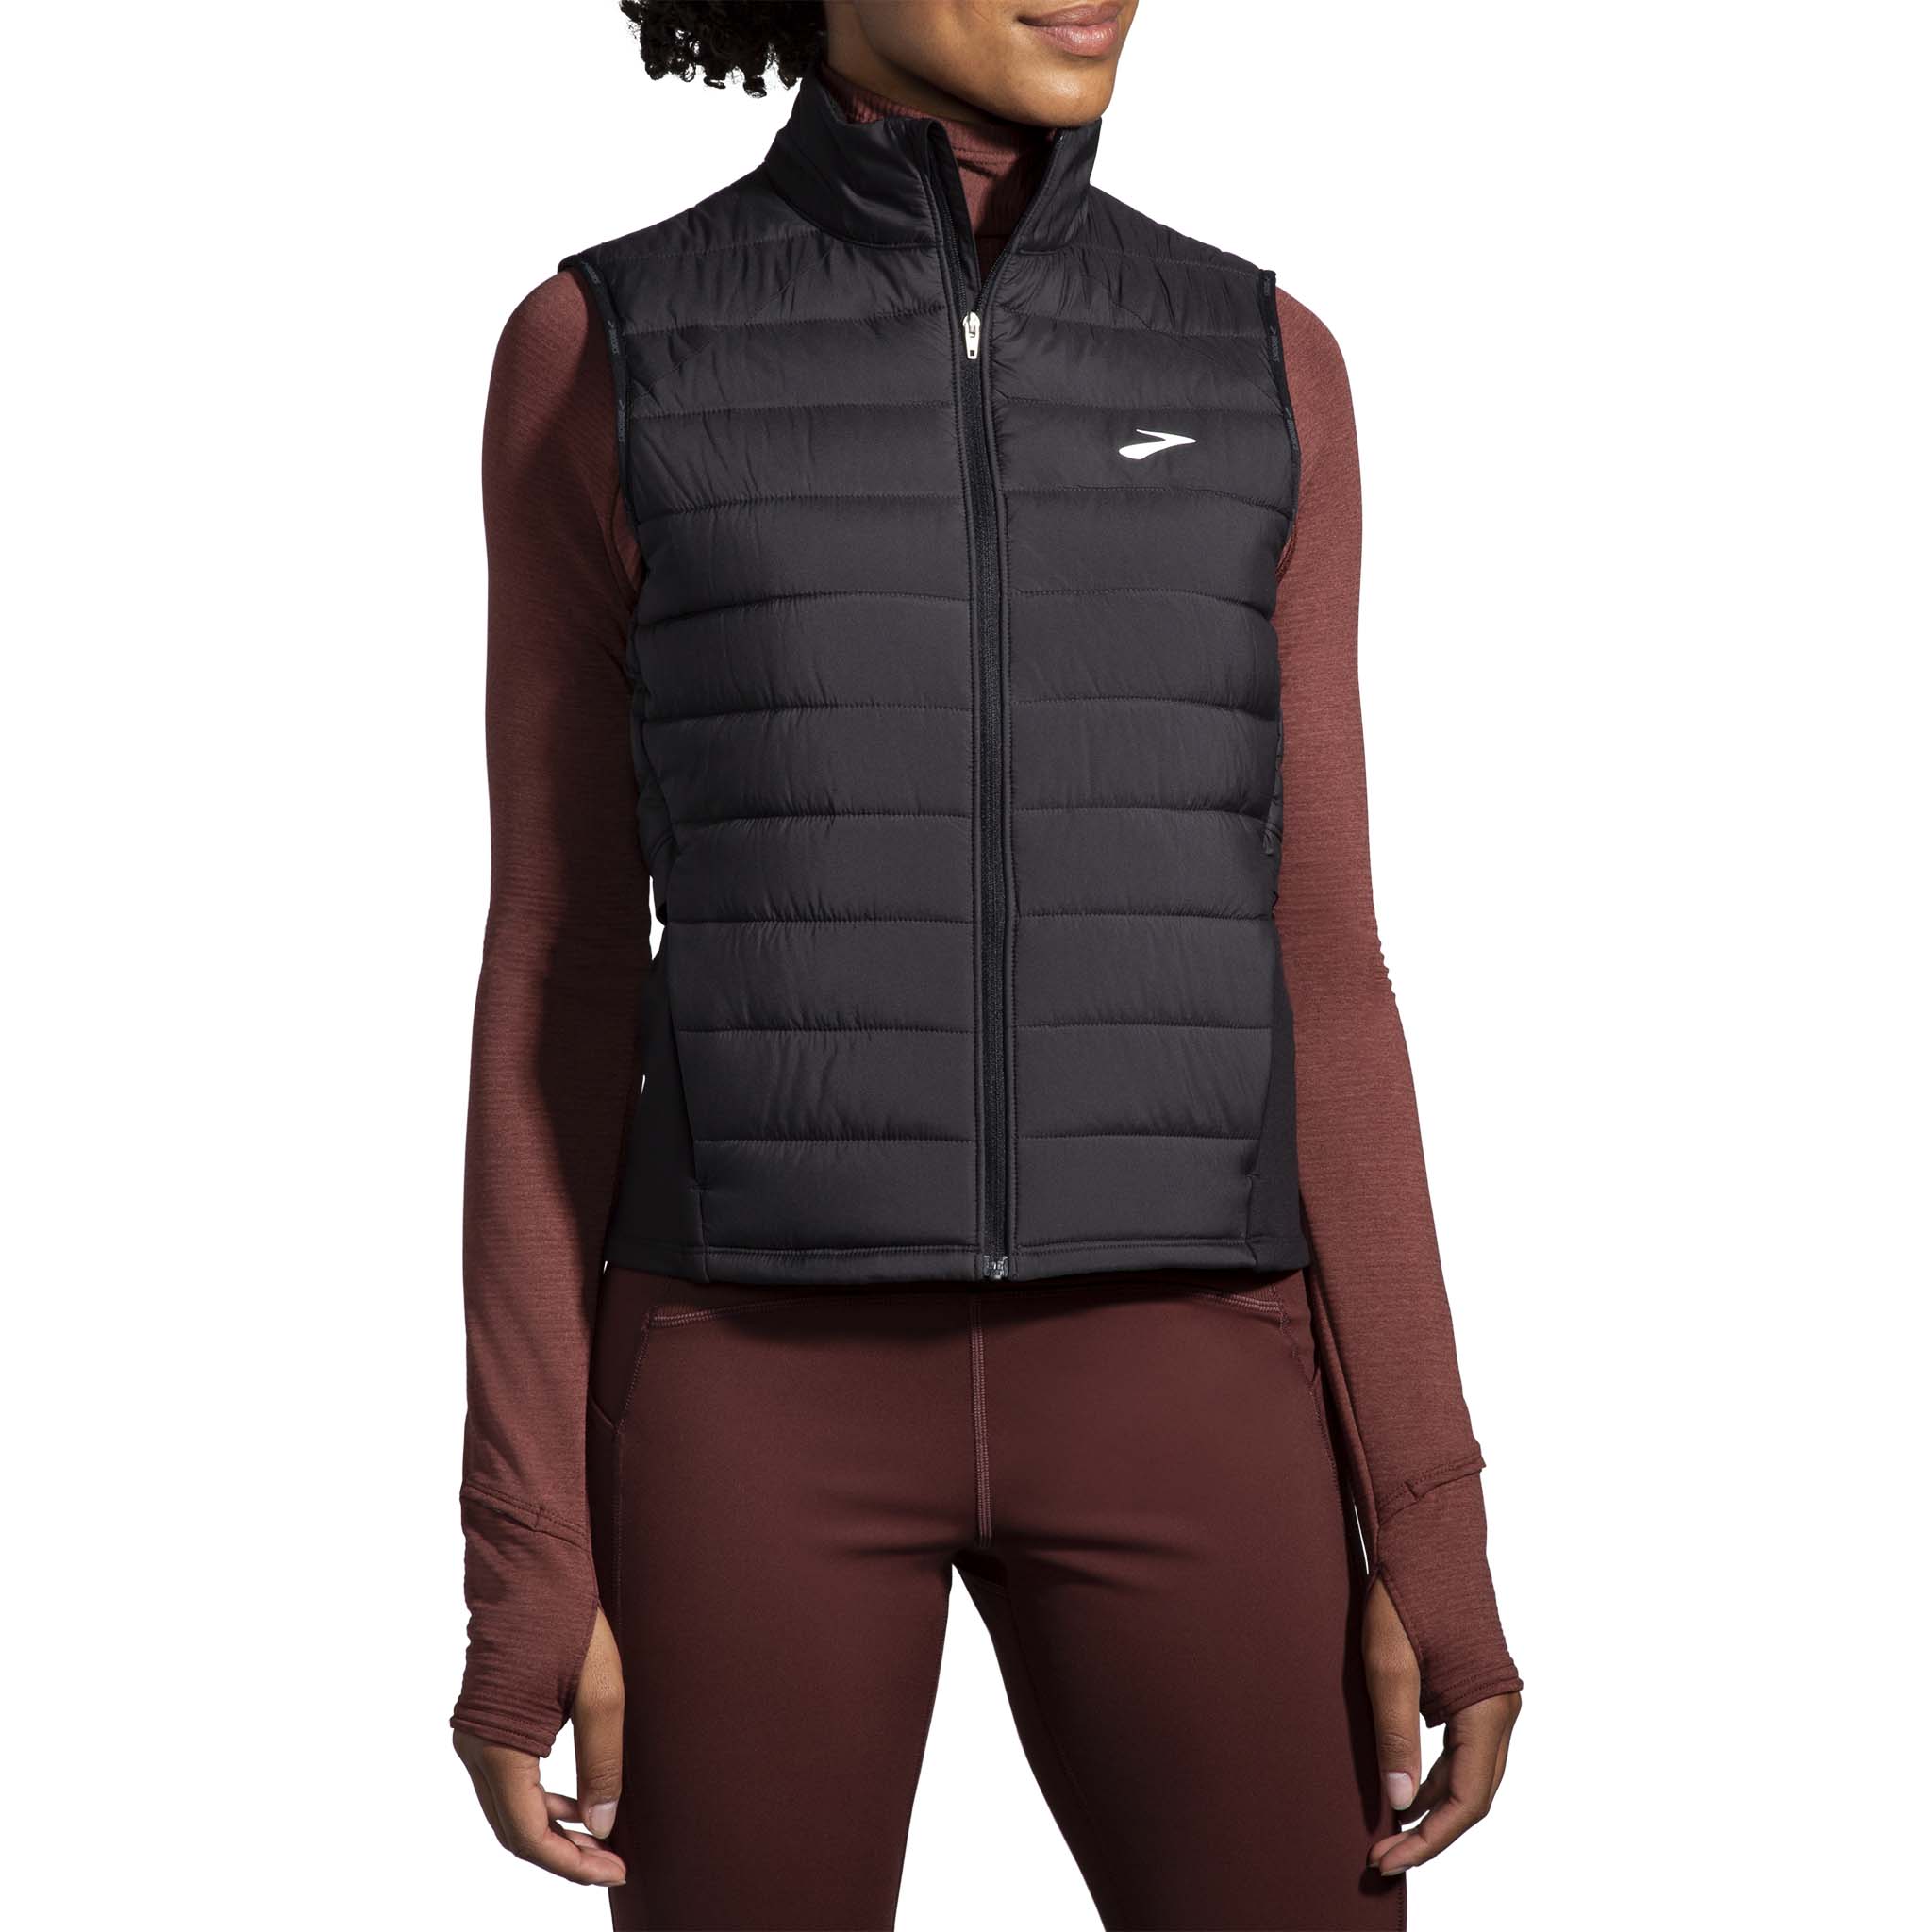 Brooks Shield Hybrid 2.0 sleeveless running vest for women - Soccer Sport  Fitness